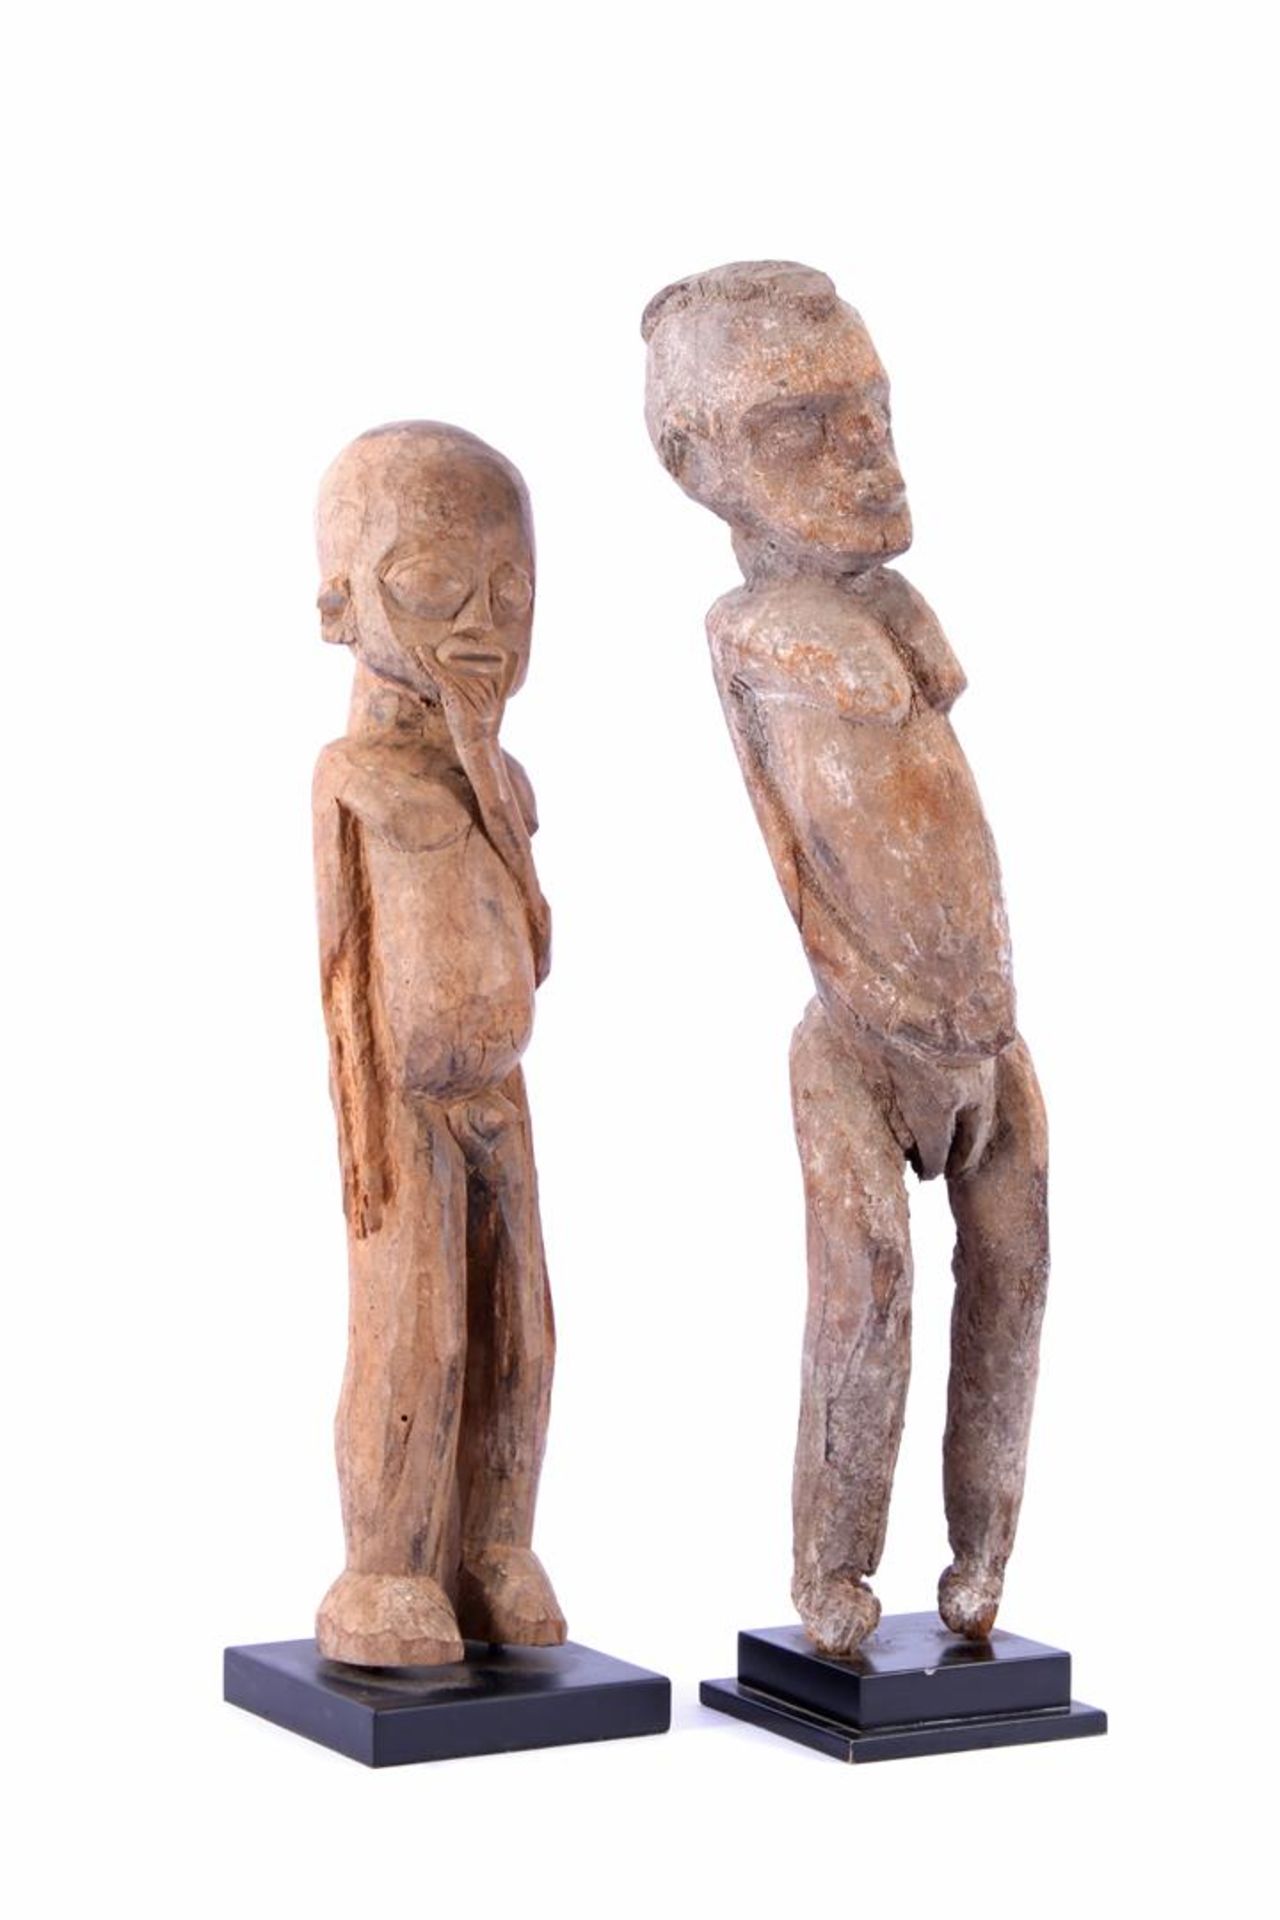 Burkina Faso, Lobi stam, 2 houten bestoken beelden van figuren 50 cm en 56 cm hoog